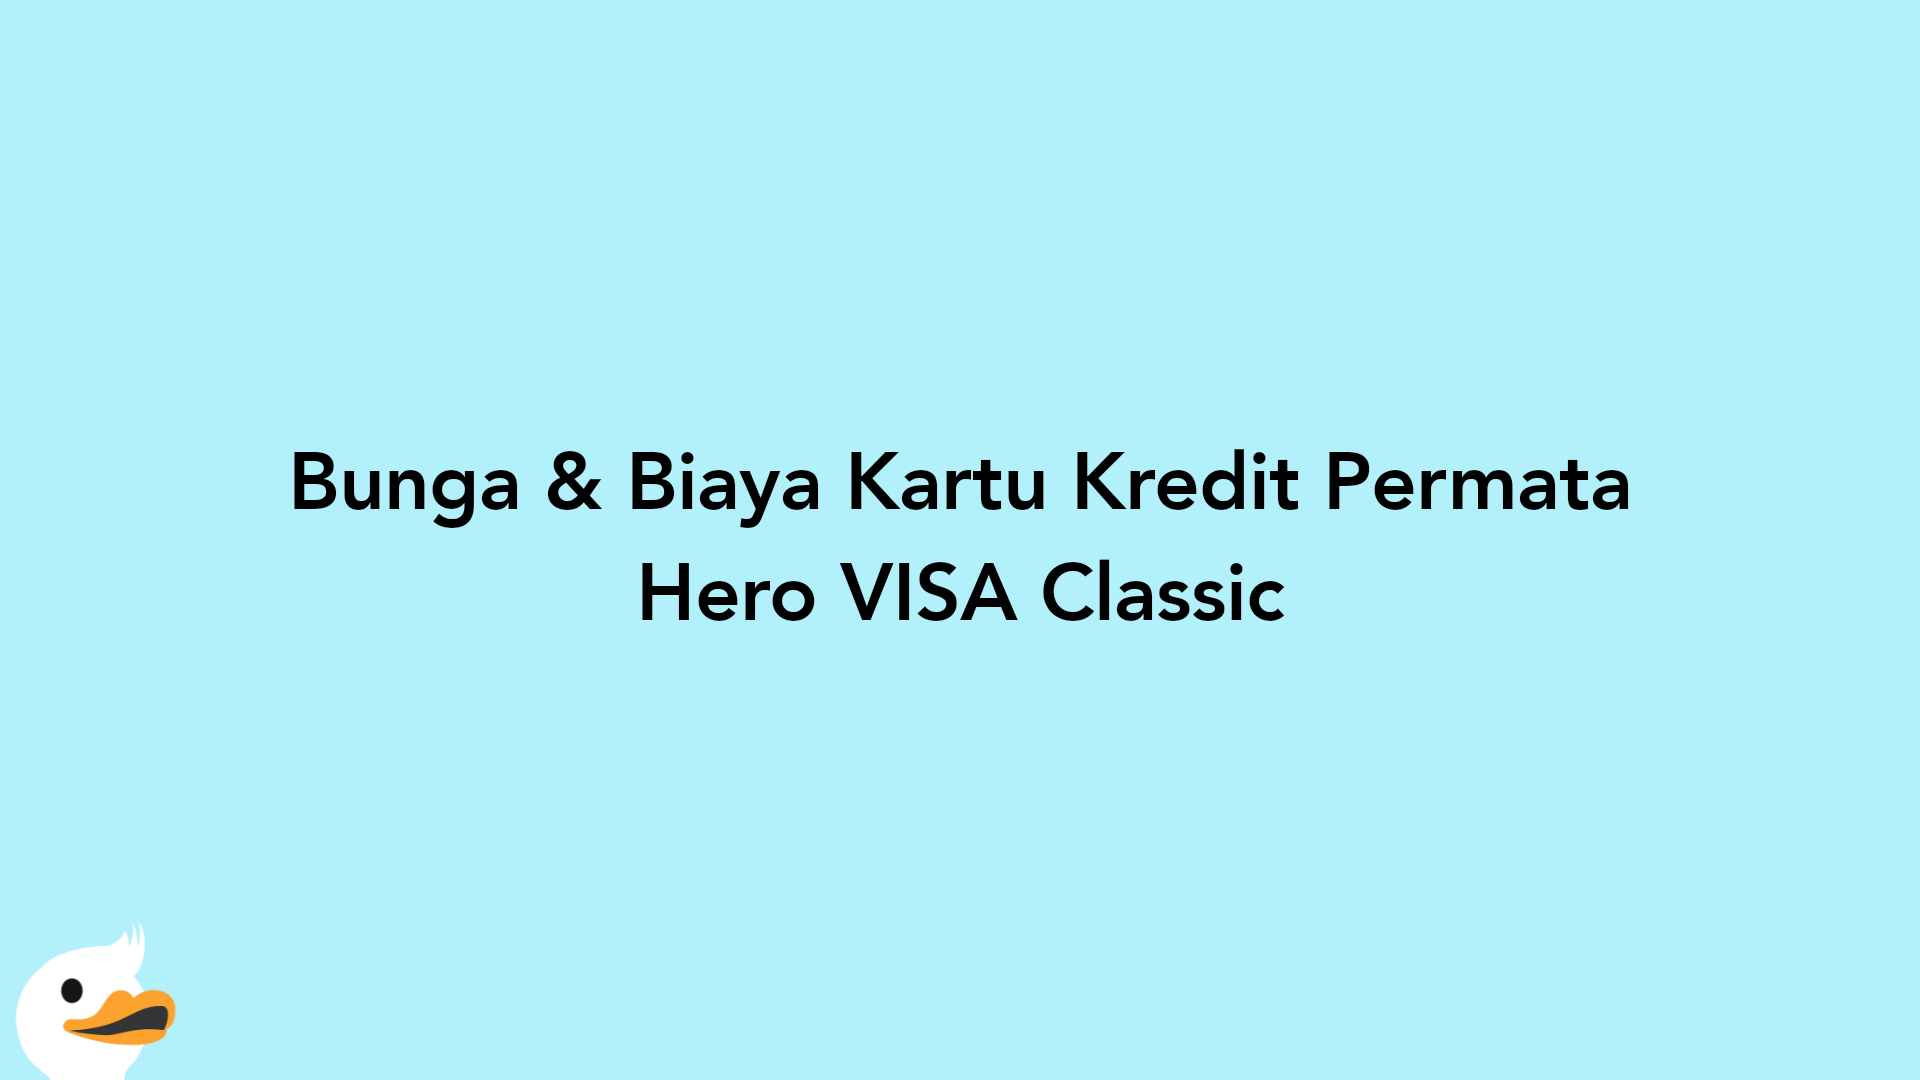 Bunga & Biaya Kartu Kredit Permata Hero VISA Classic